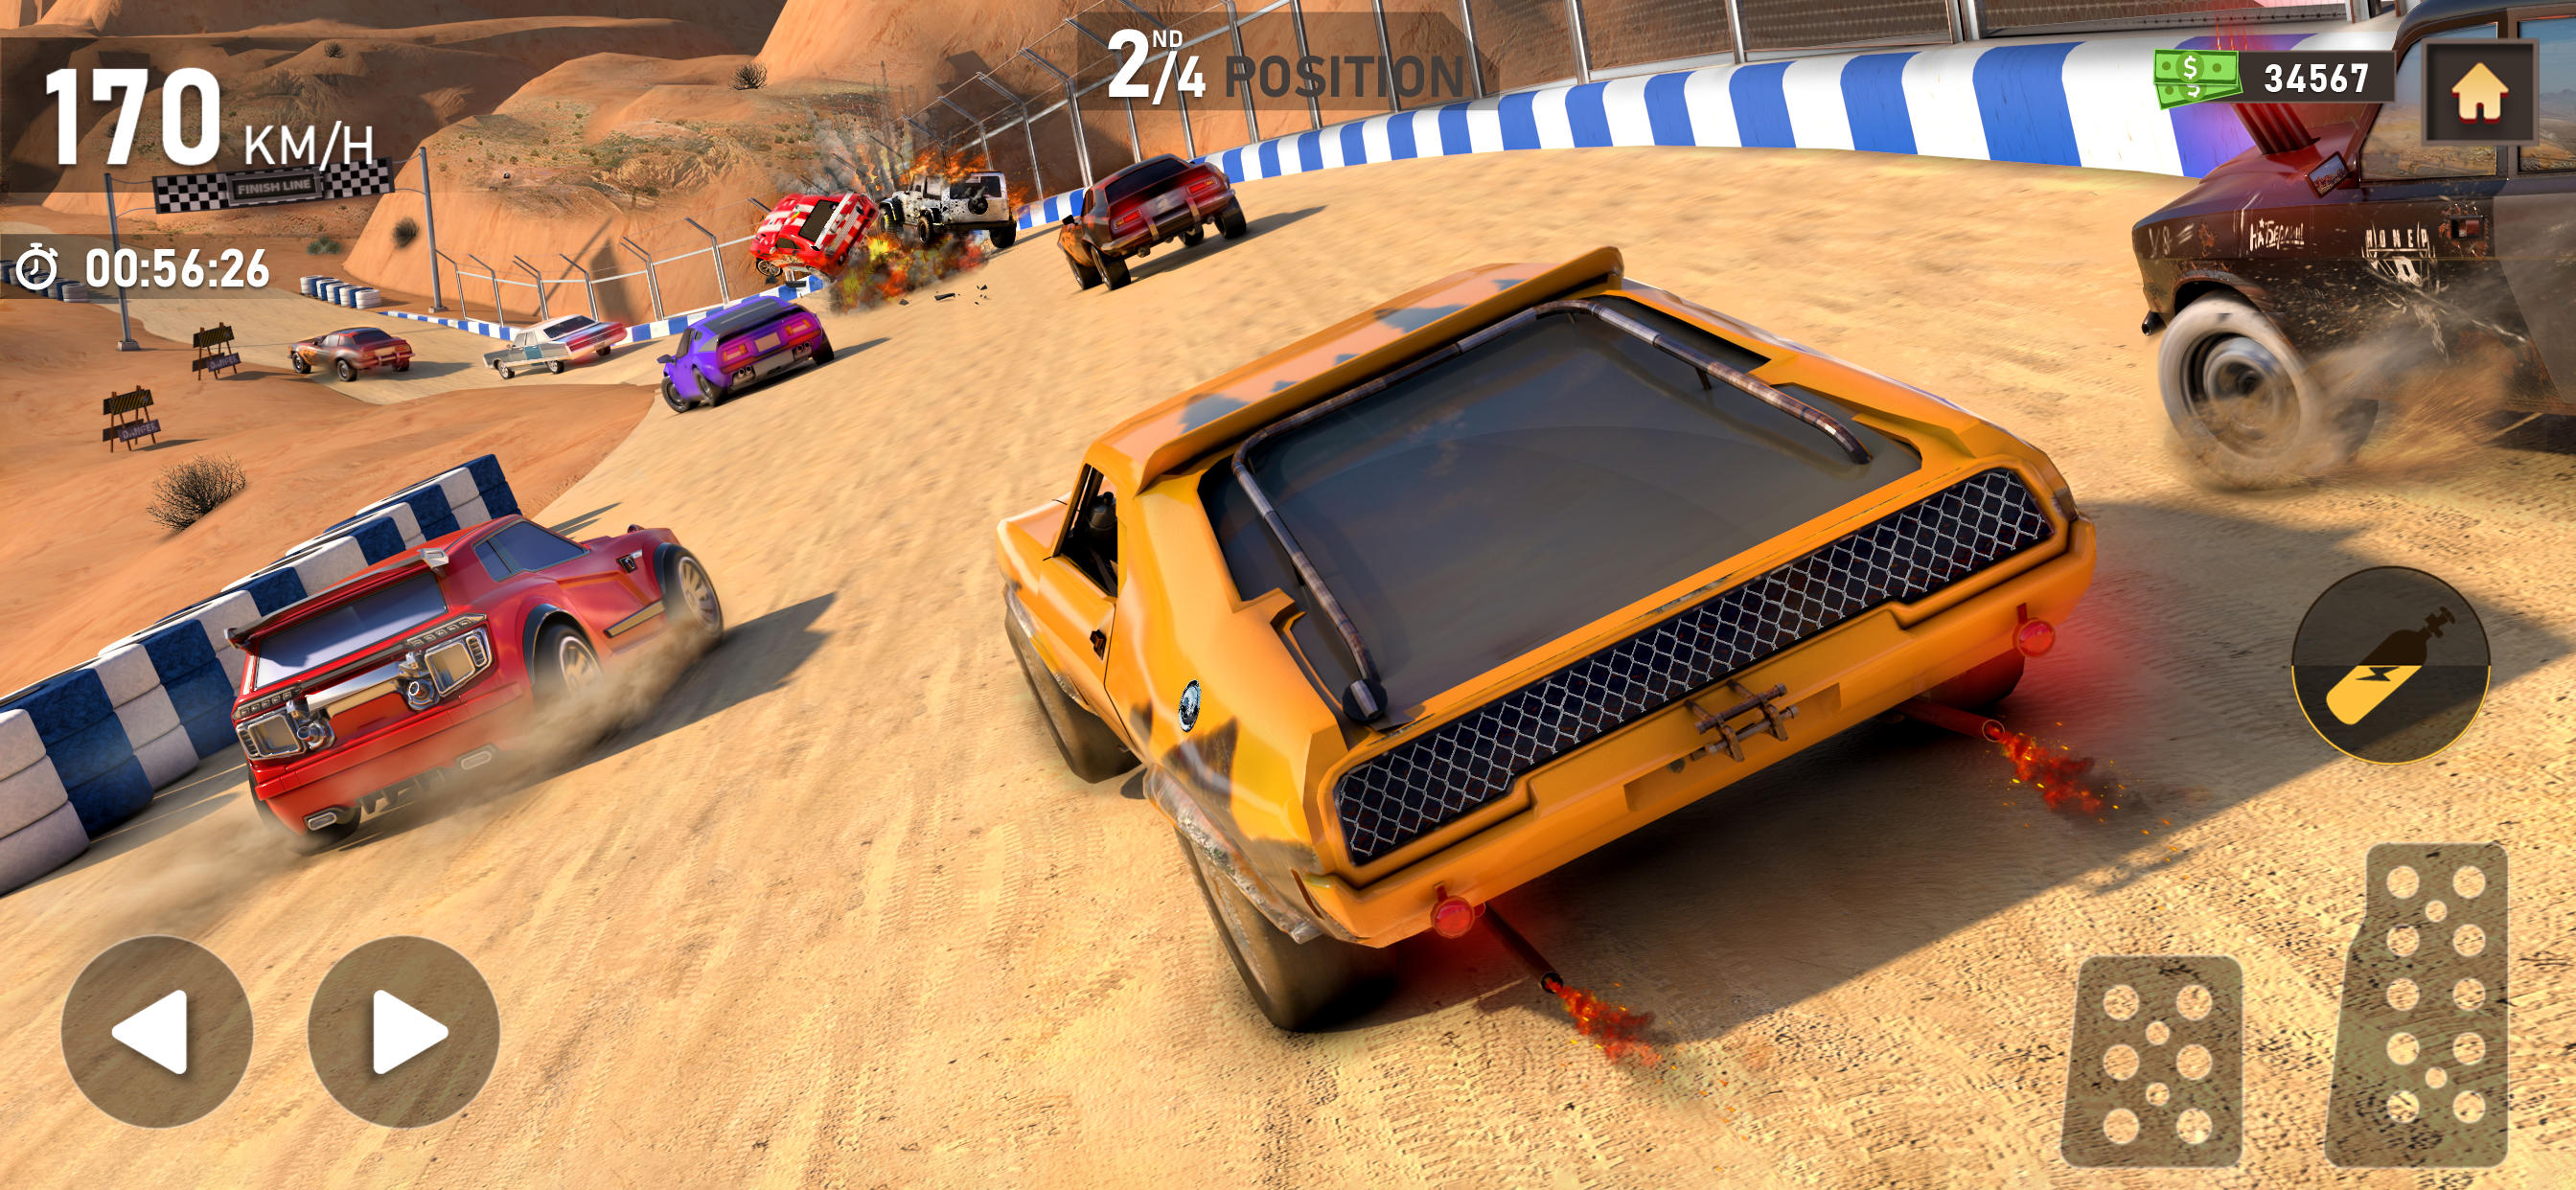 Screenshot 1 of Dirt Track Racing Car Games 1.0.4